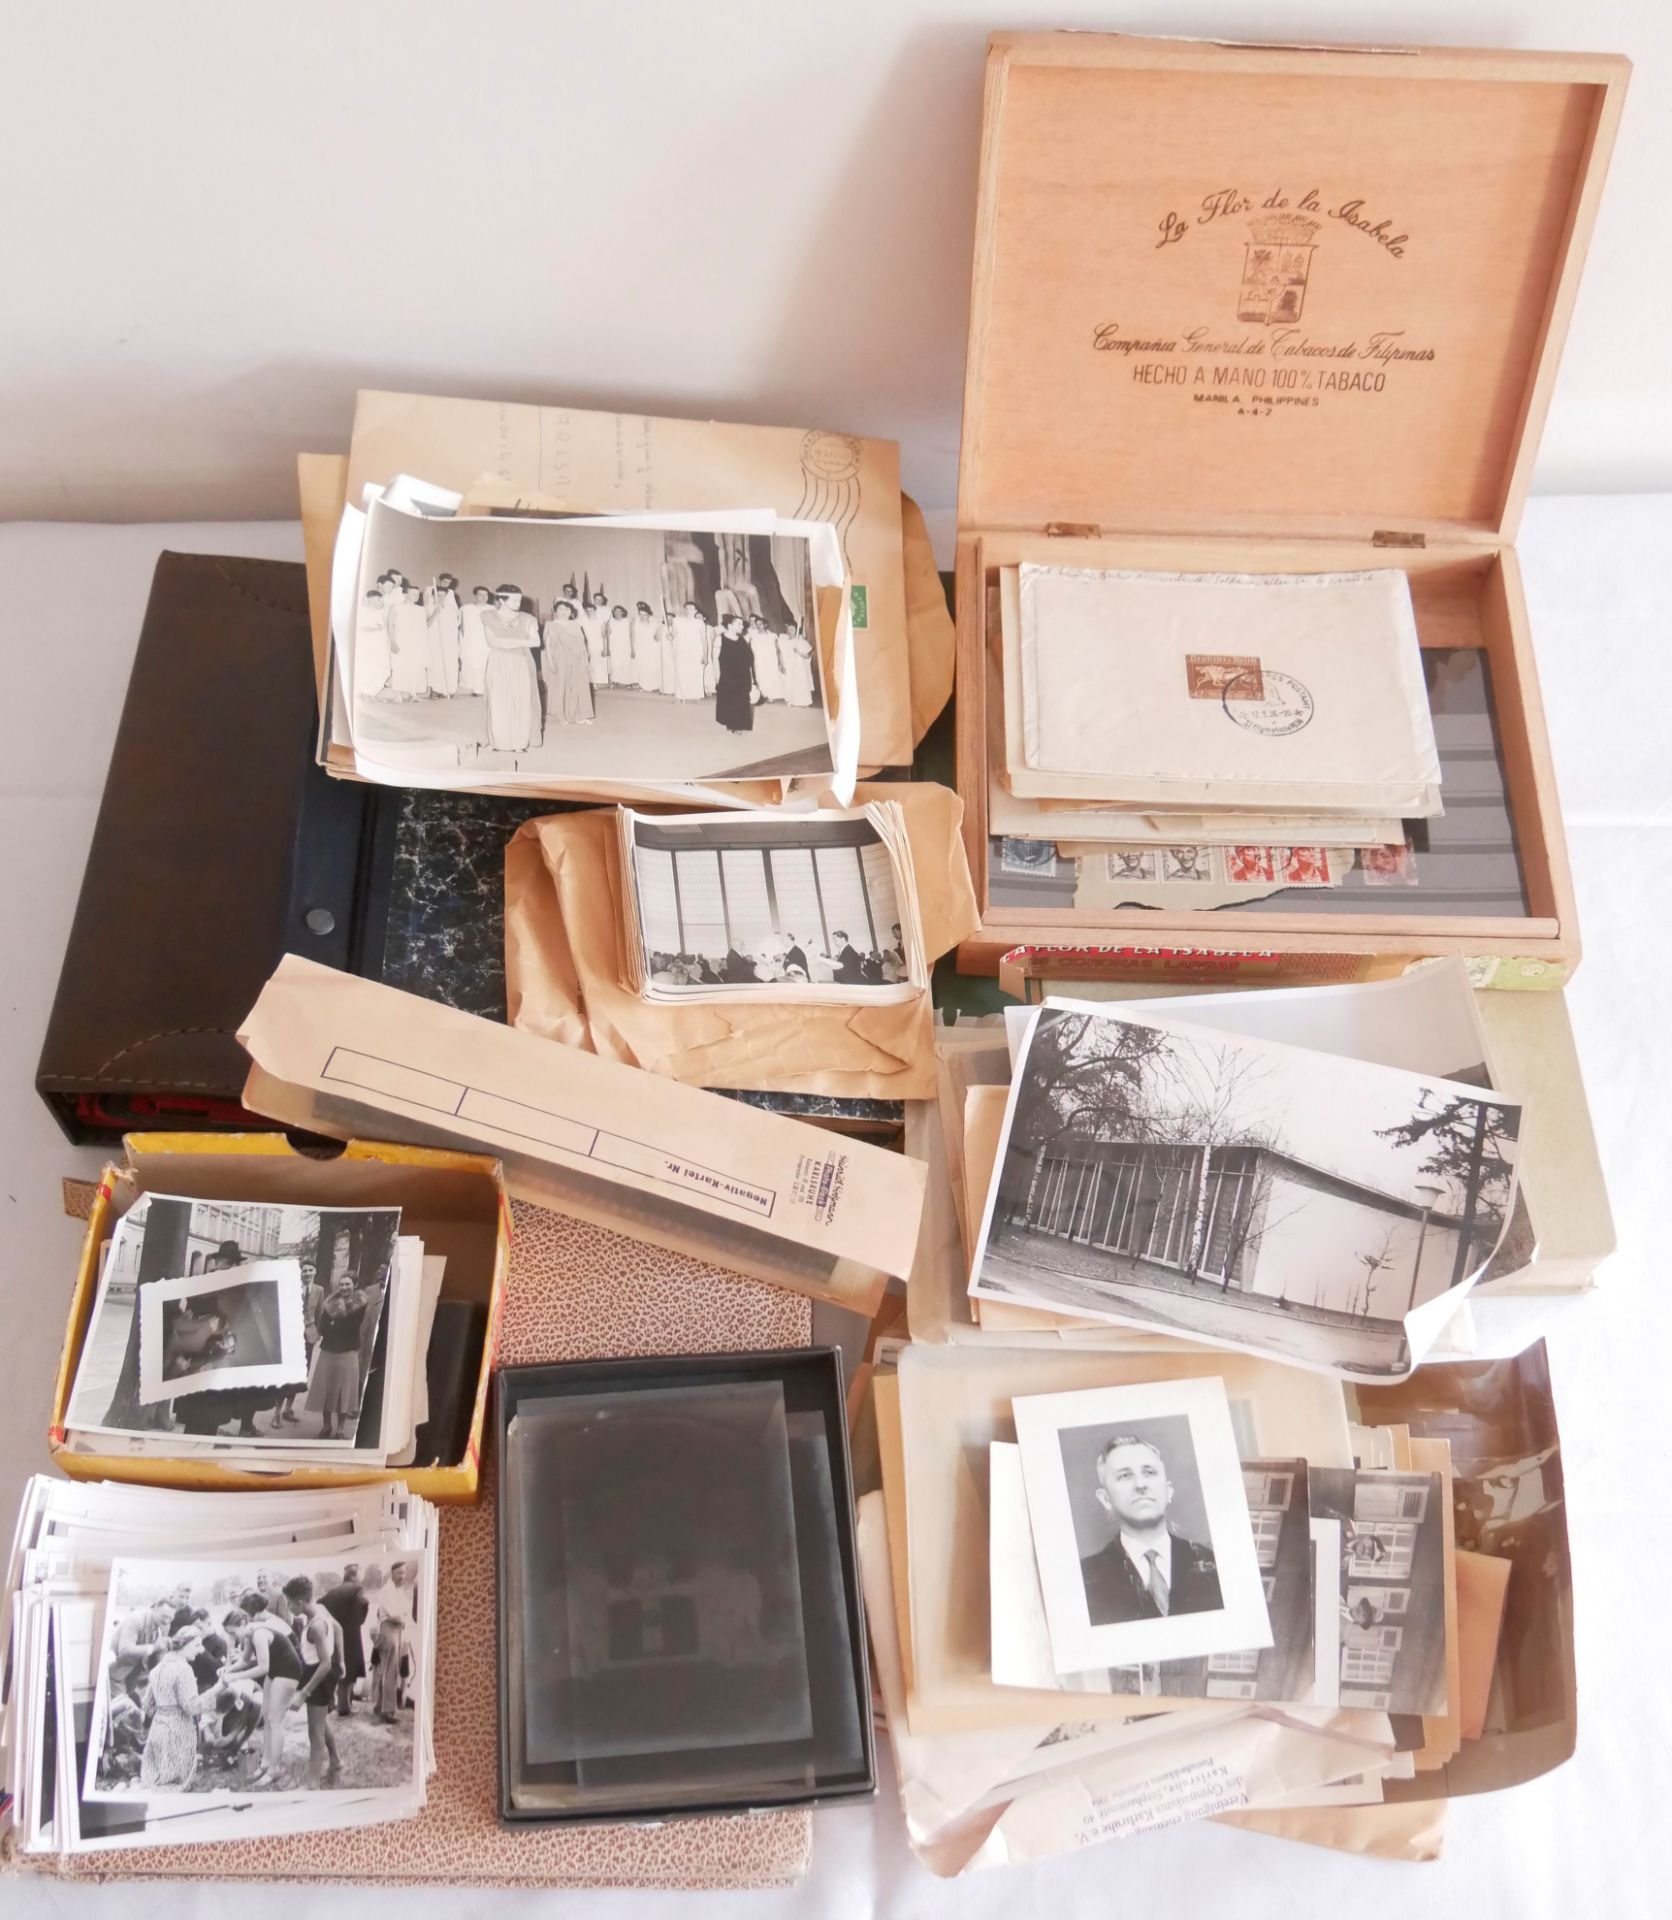 Karton voll mit Bildern, Fotos, Briefmarken, dabei auch Anfänge Bund, etc. sowie 1 leeres Münzalbum.